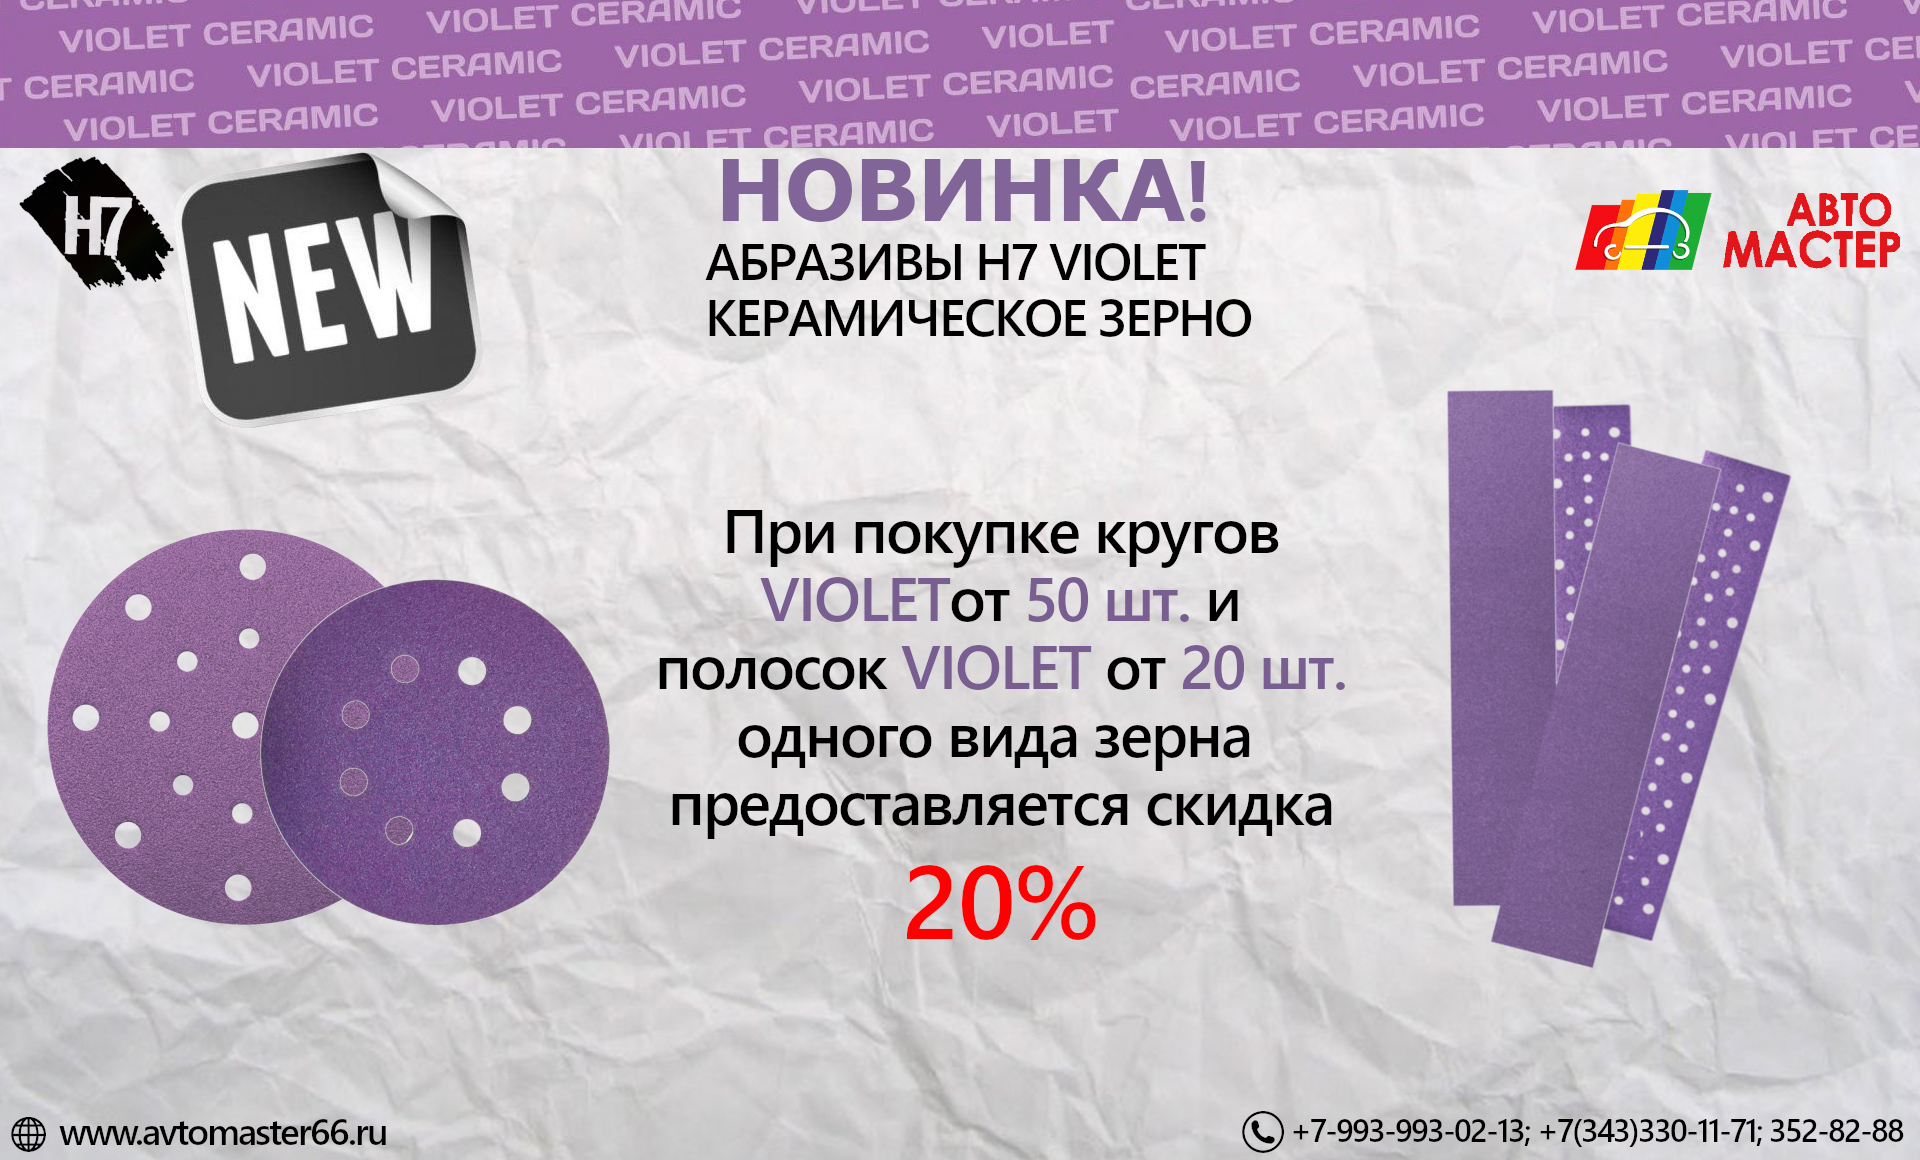 Абразивы H7 Violet со скидкой 20%